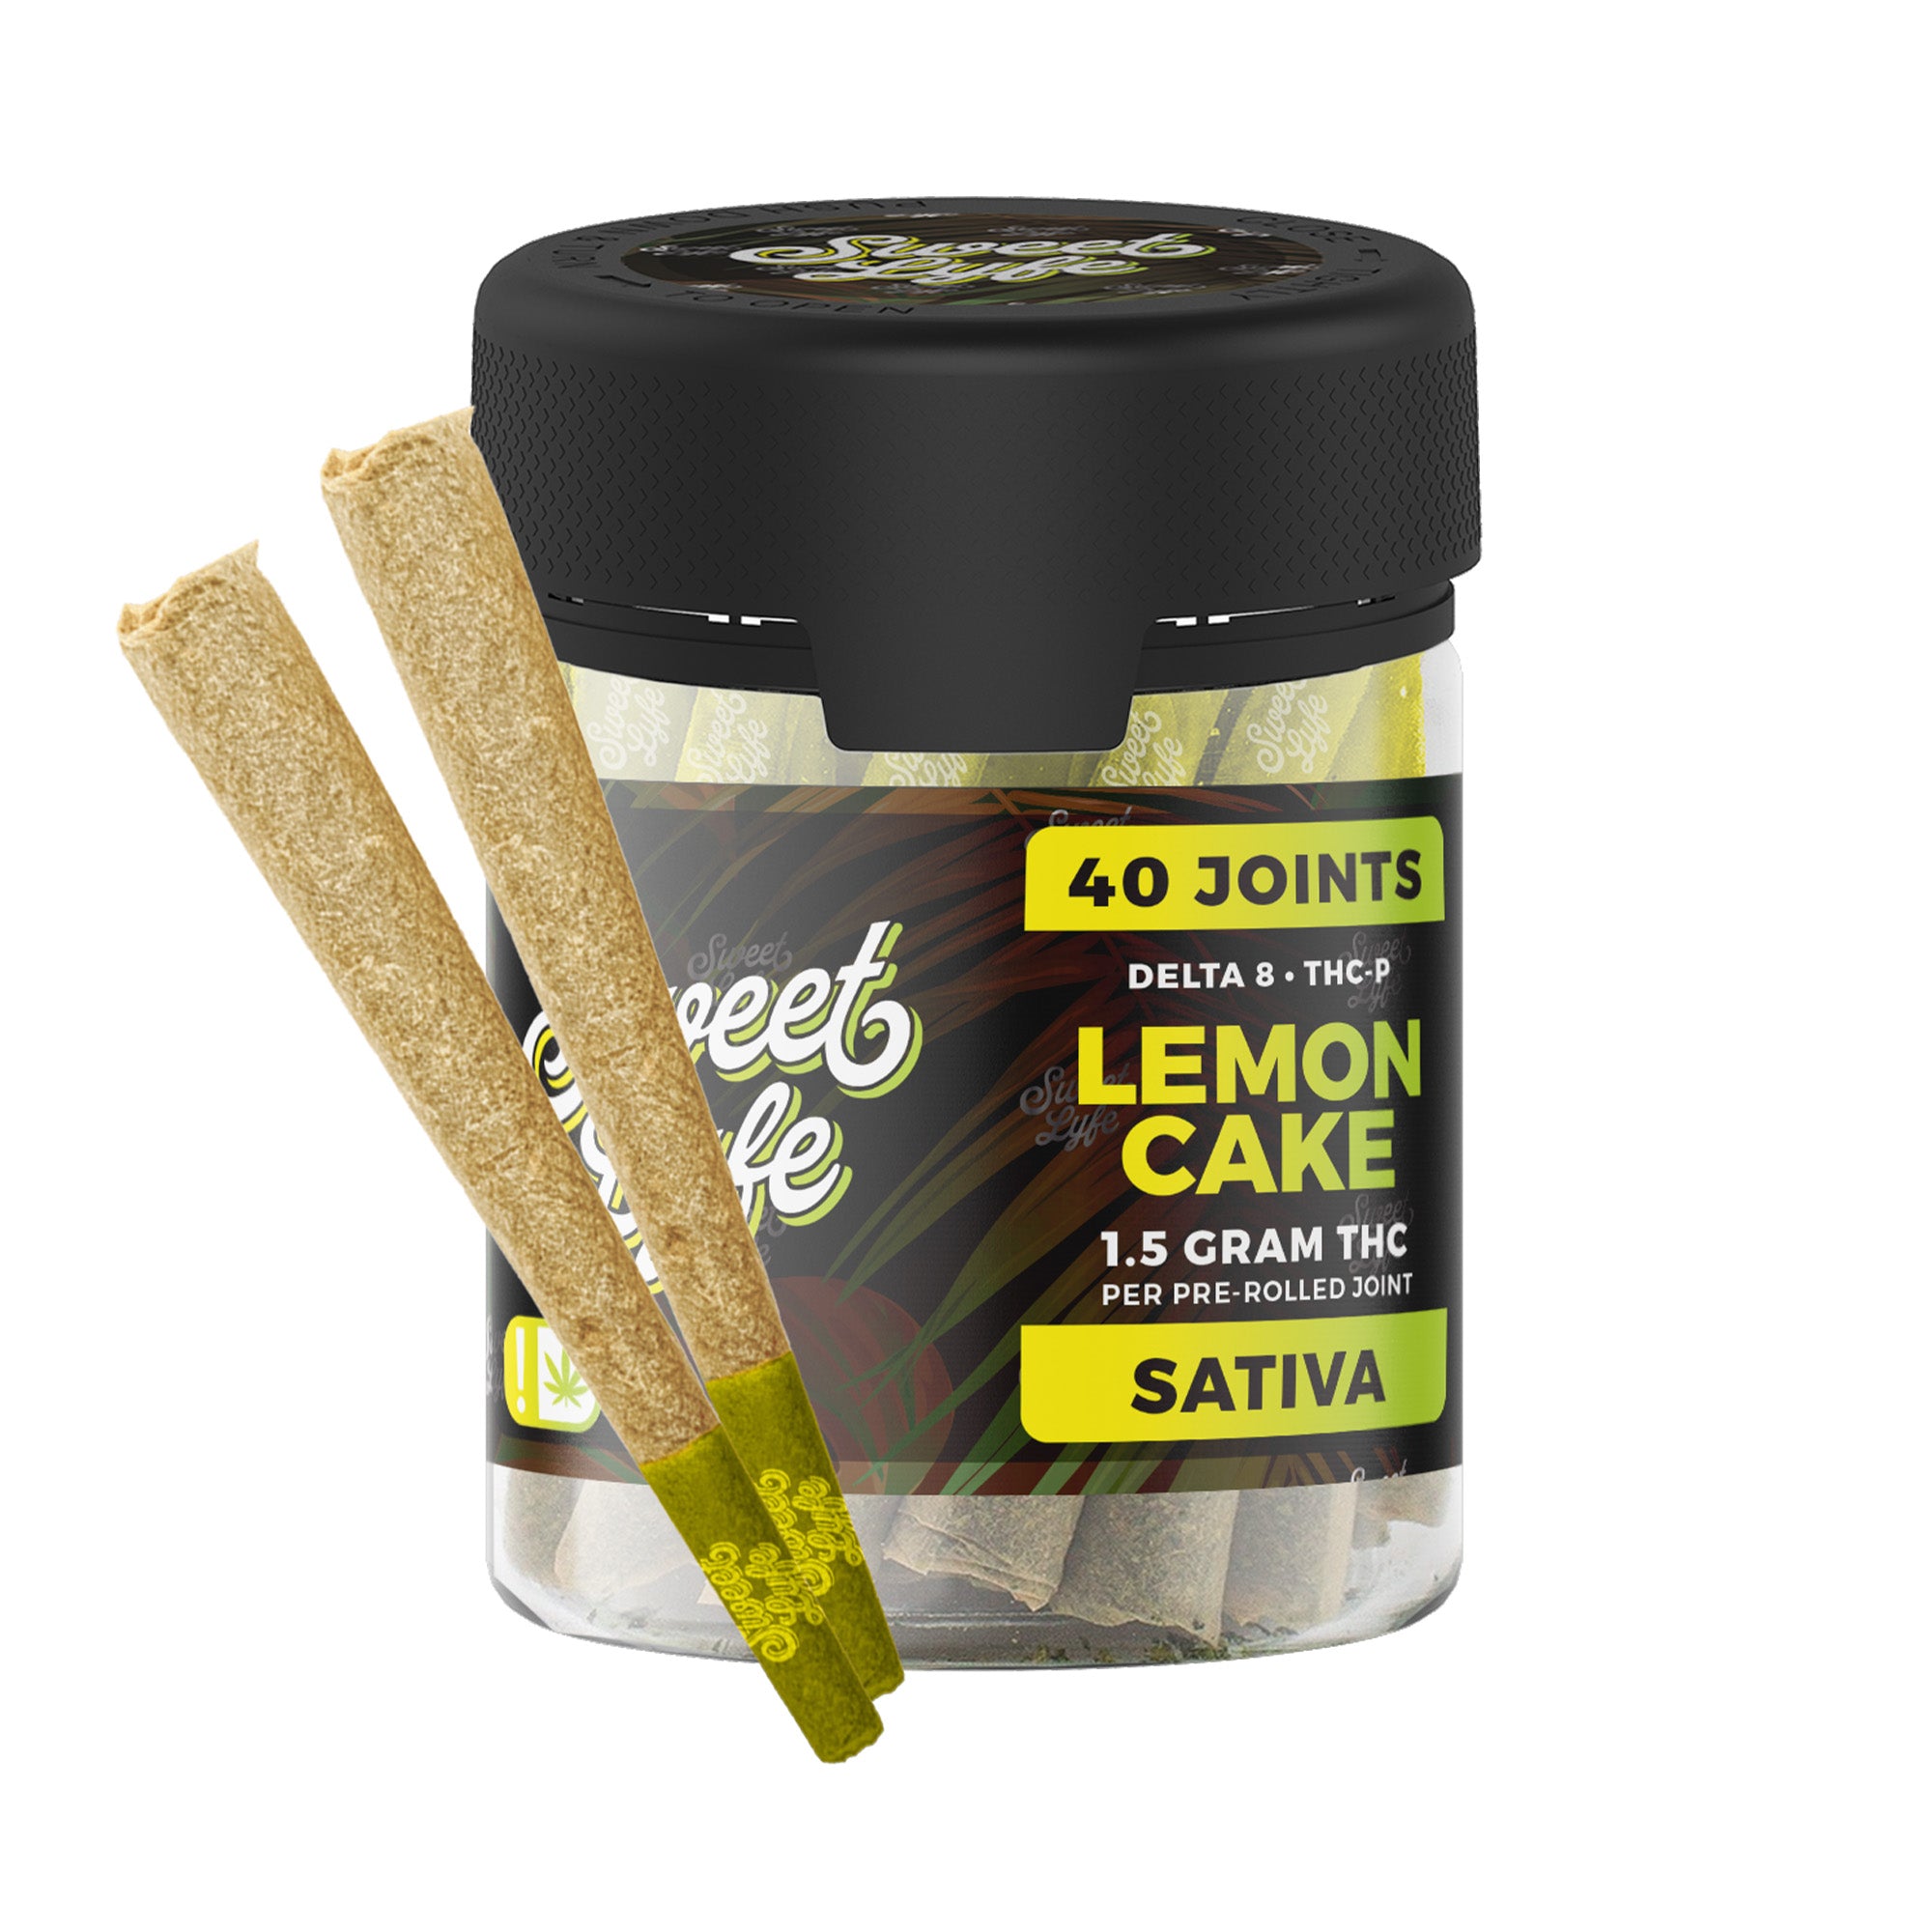 40 Pack of Joints D8+THCP  - 1.5g per Joint - Lemon Cake - Sativa